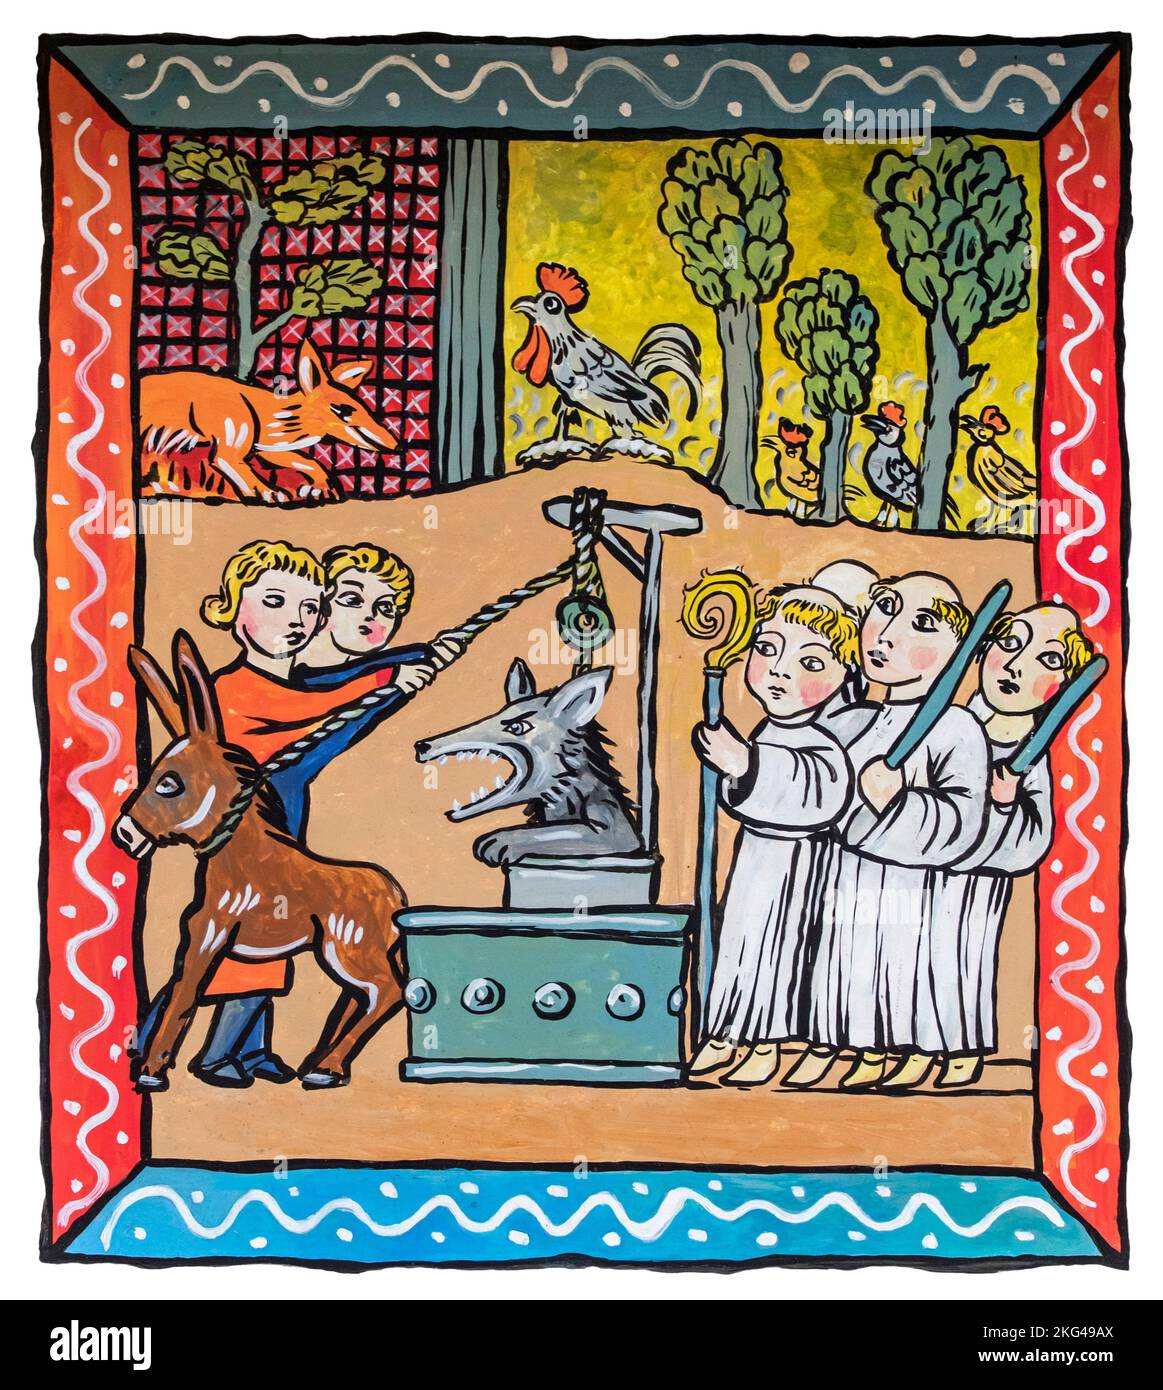 Illustration médiévale du Reynard le renard fable montrant le loup Isengrim / Ysengrim dans un puits d'eau Banque D'Images